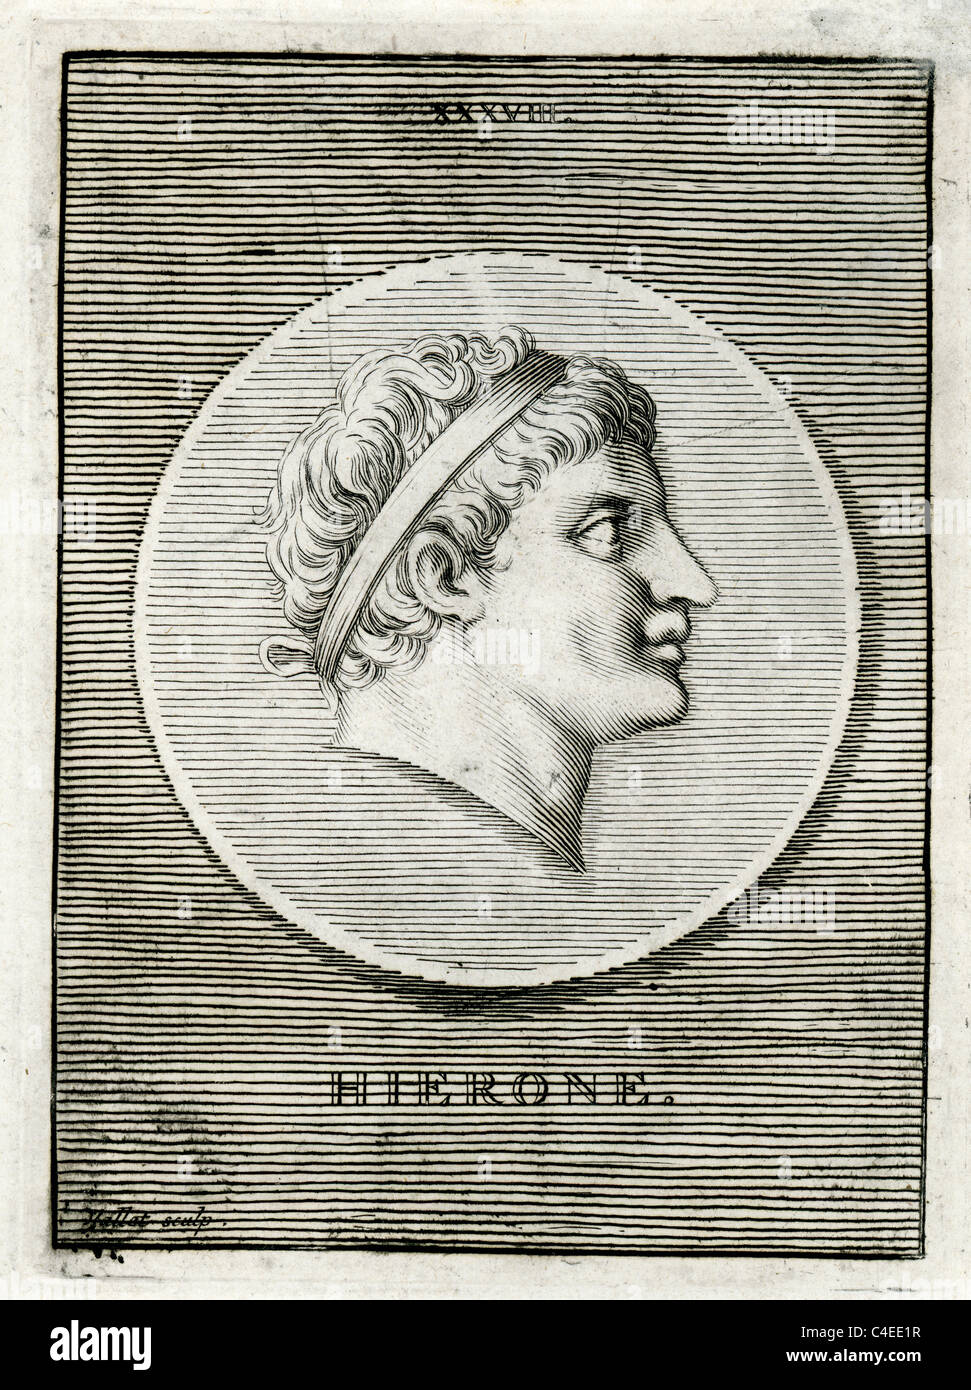 Ritratto classico di Hieron II, re di Siracusa da 270 a 215 BC. Egli era un ex generale di Pirro di Epiro Foto Stock